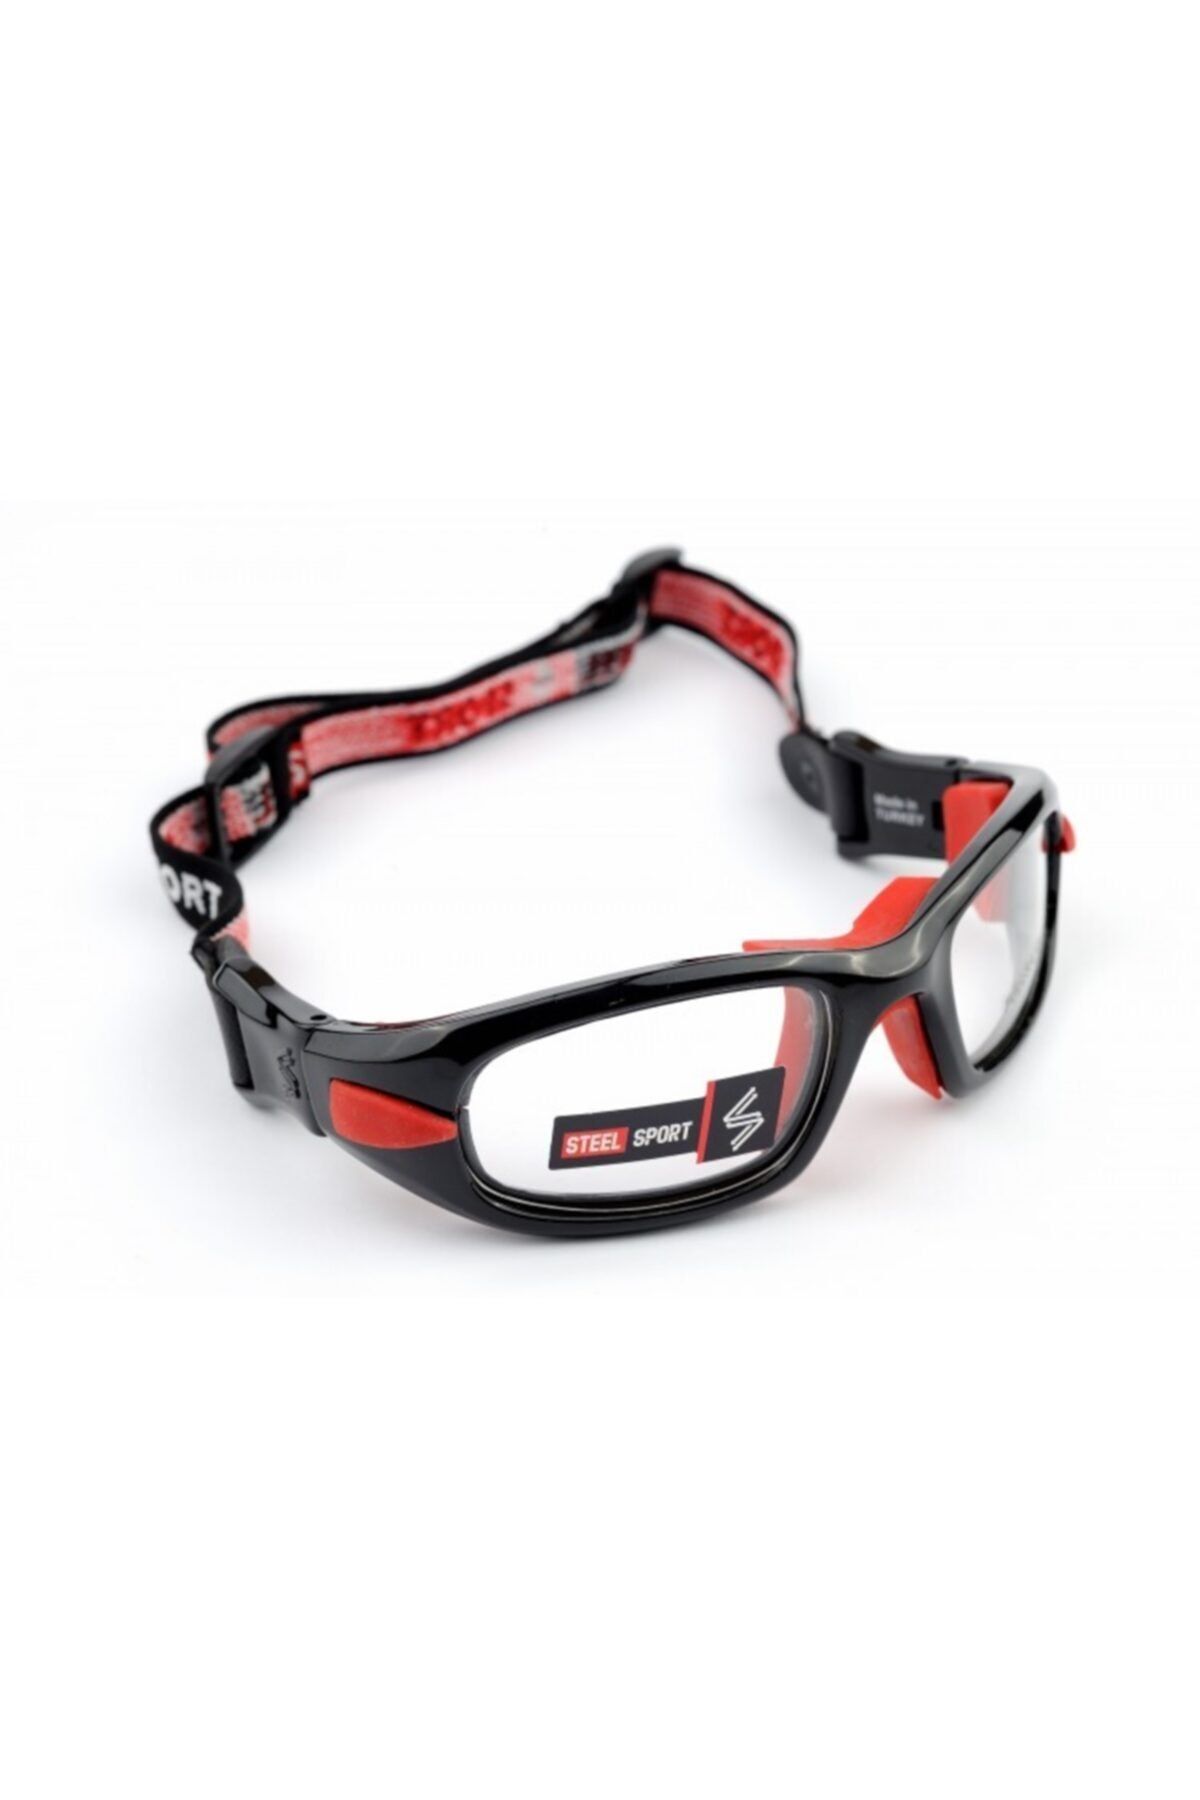 Steel Sport Unisex Parlak Metalik Siyah - Kırmızı Pedler Fullsafe Numaralı Olabilen Sporcu Gözlüğü